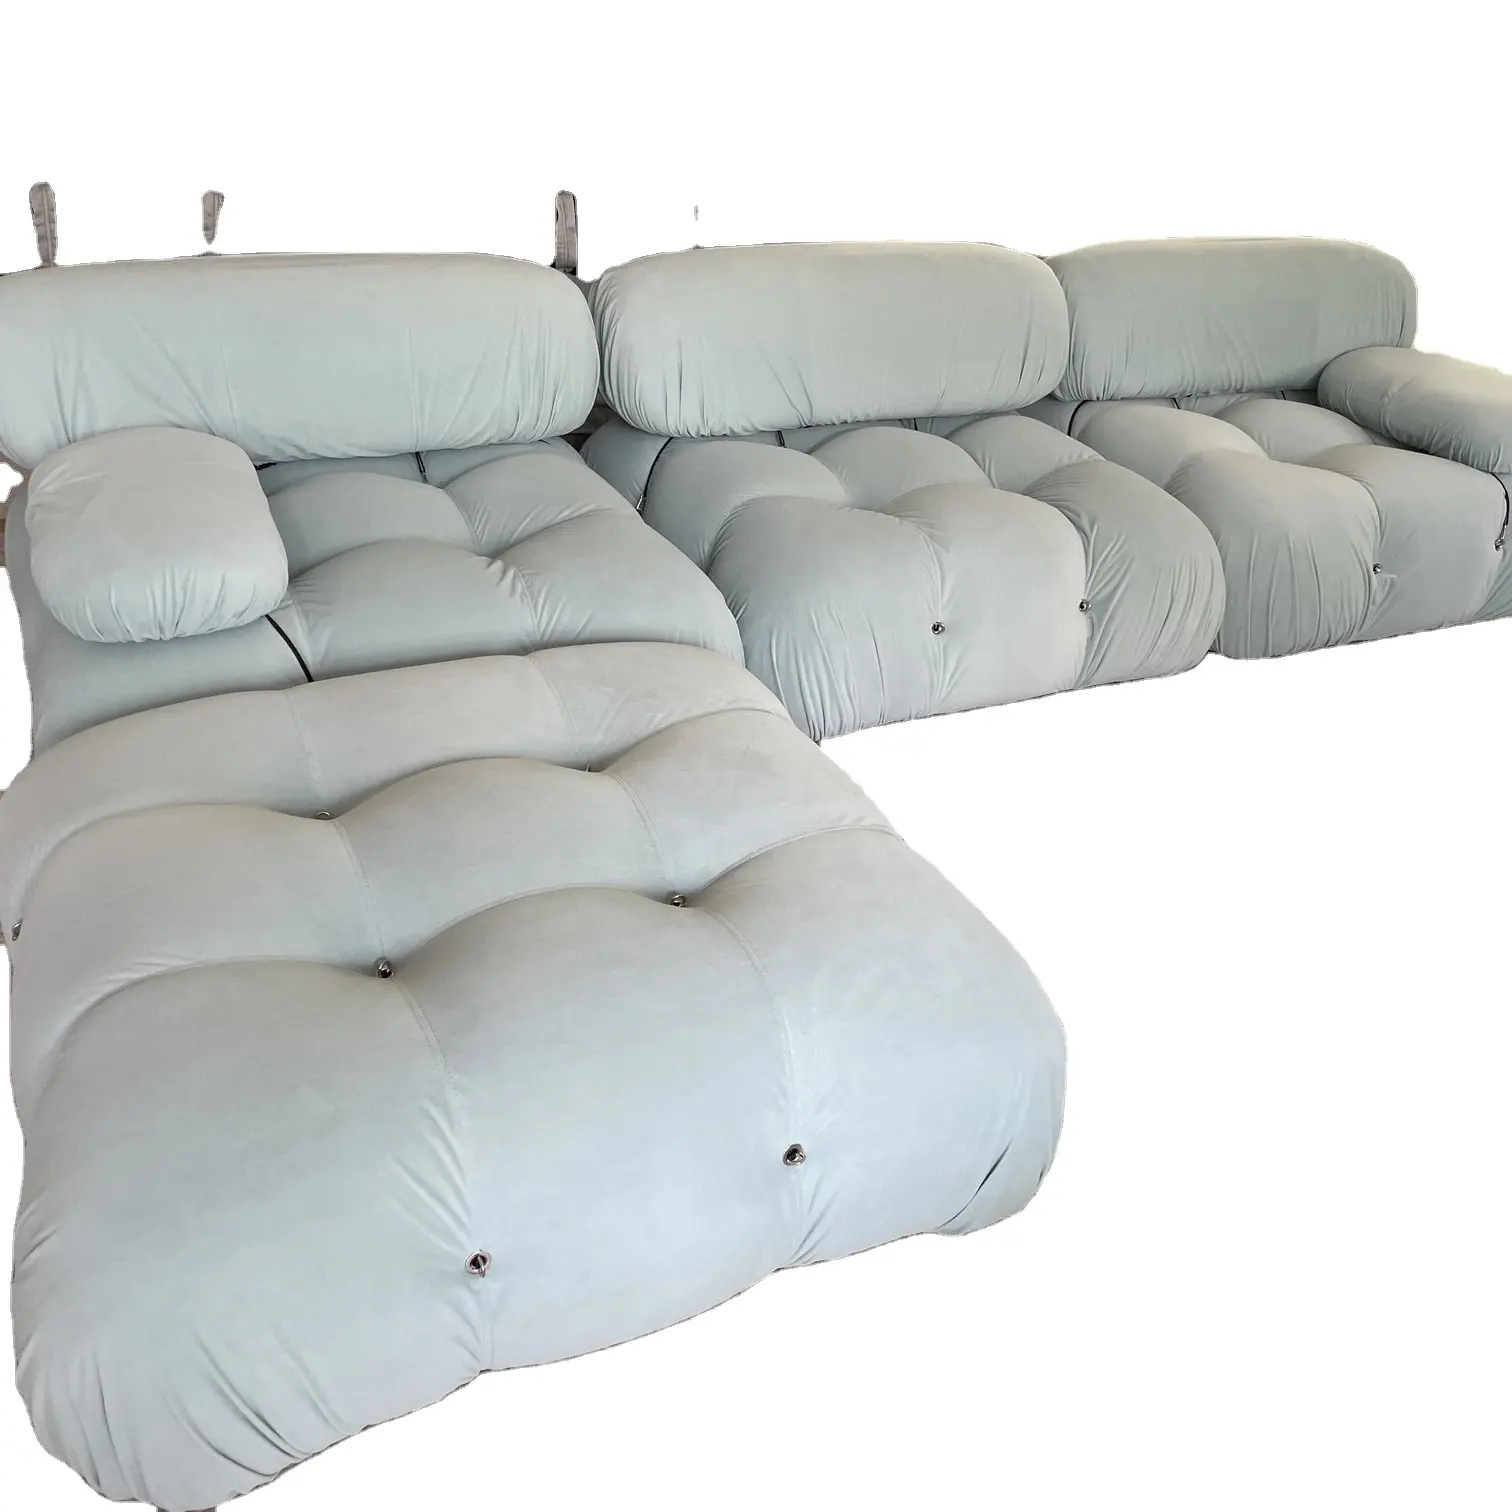 Salon moderne Mario canapé loisirs canapé modulaire confortable et durable Boucle canapé pour la maison ensemble de meubles canapé sectionnel